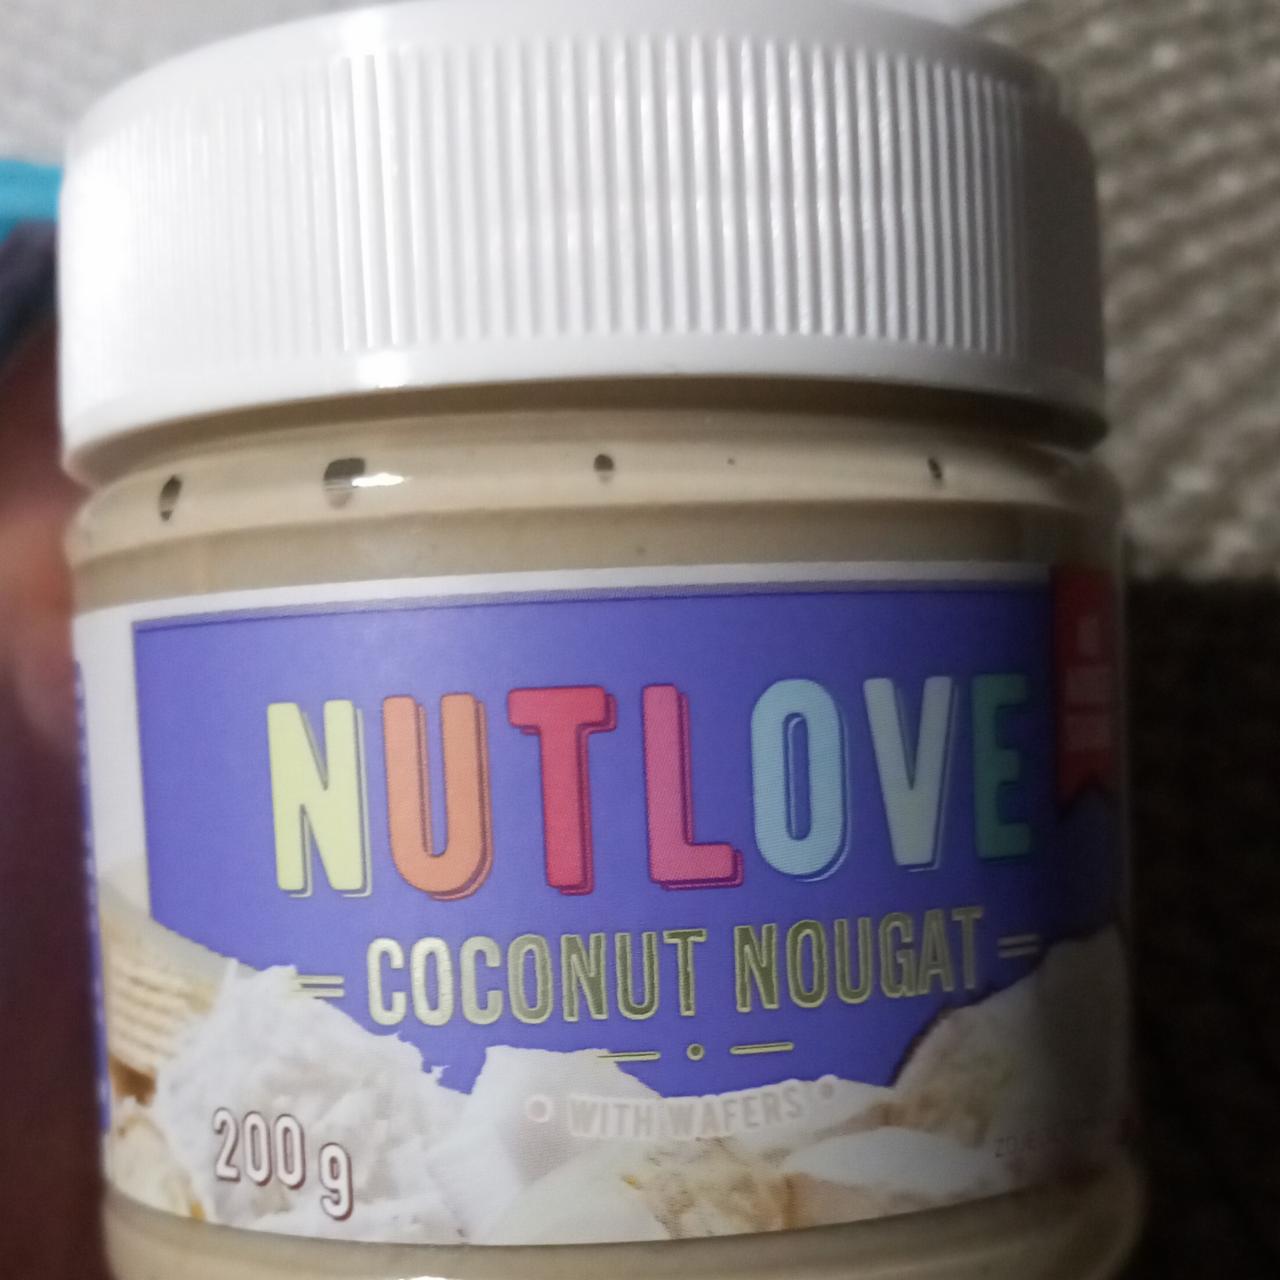 Zdjęcia - Nutlove coconut nougat with wafers